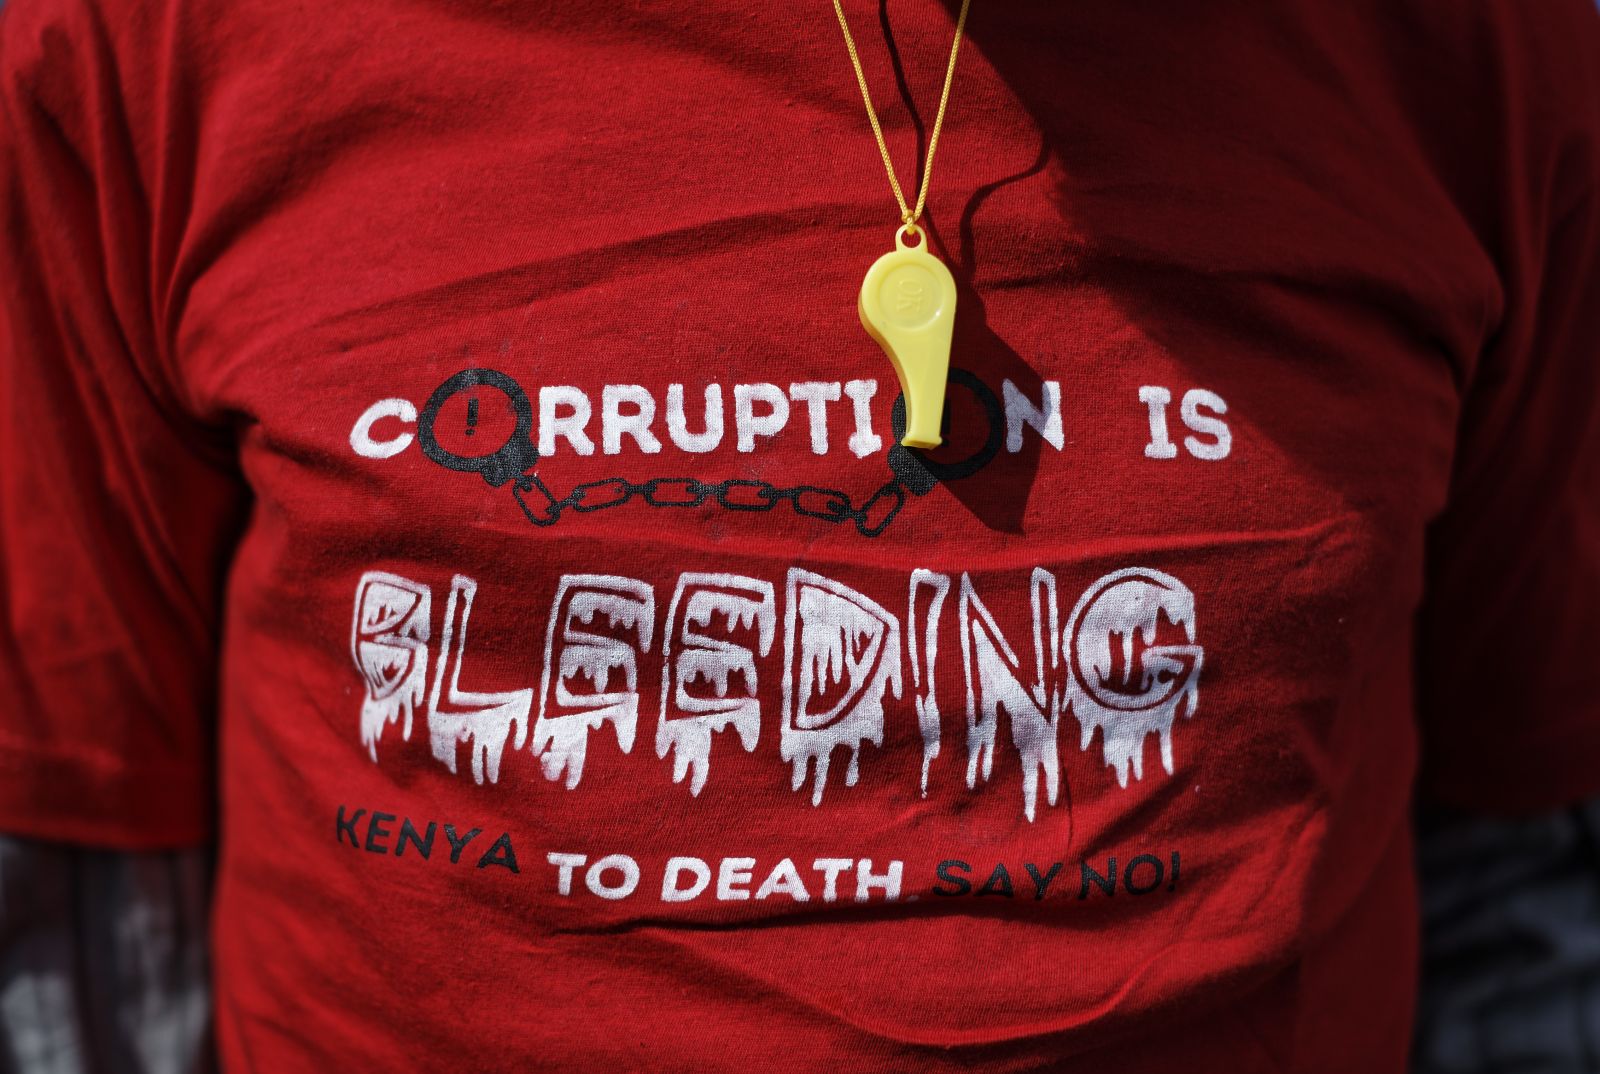 Die Kenianer haben die Nase voll von Korruption.